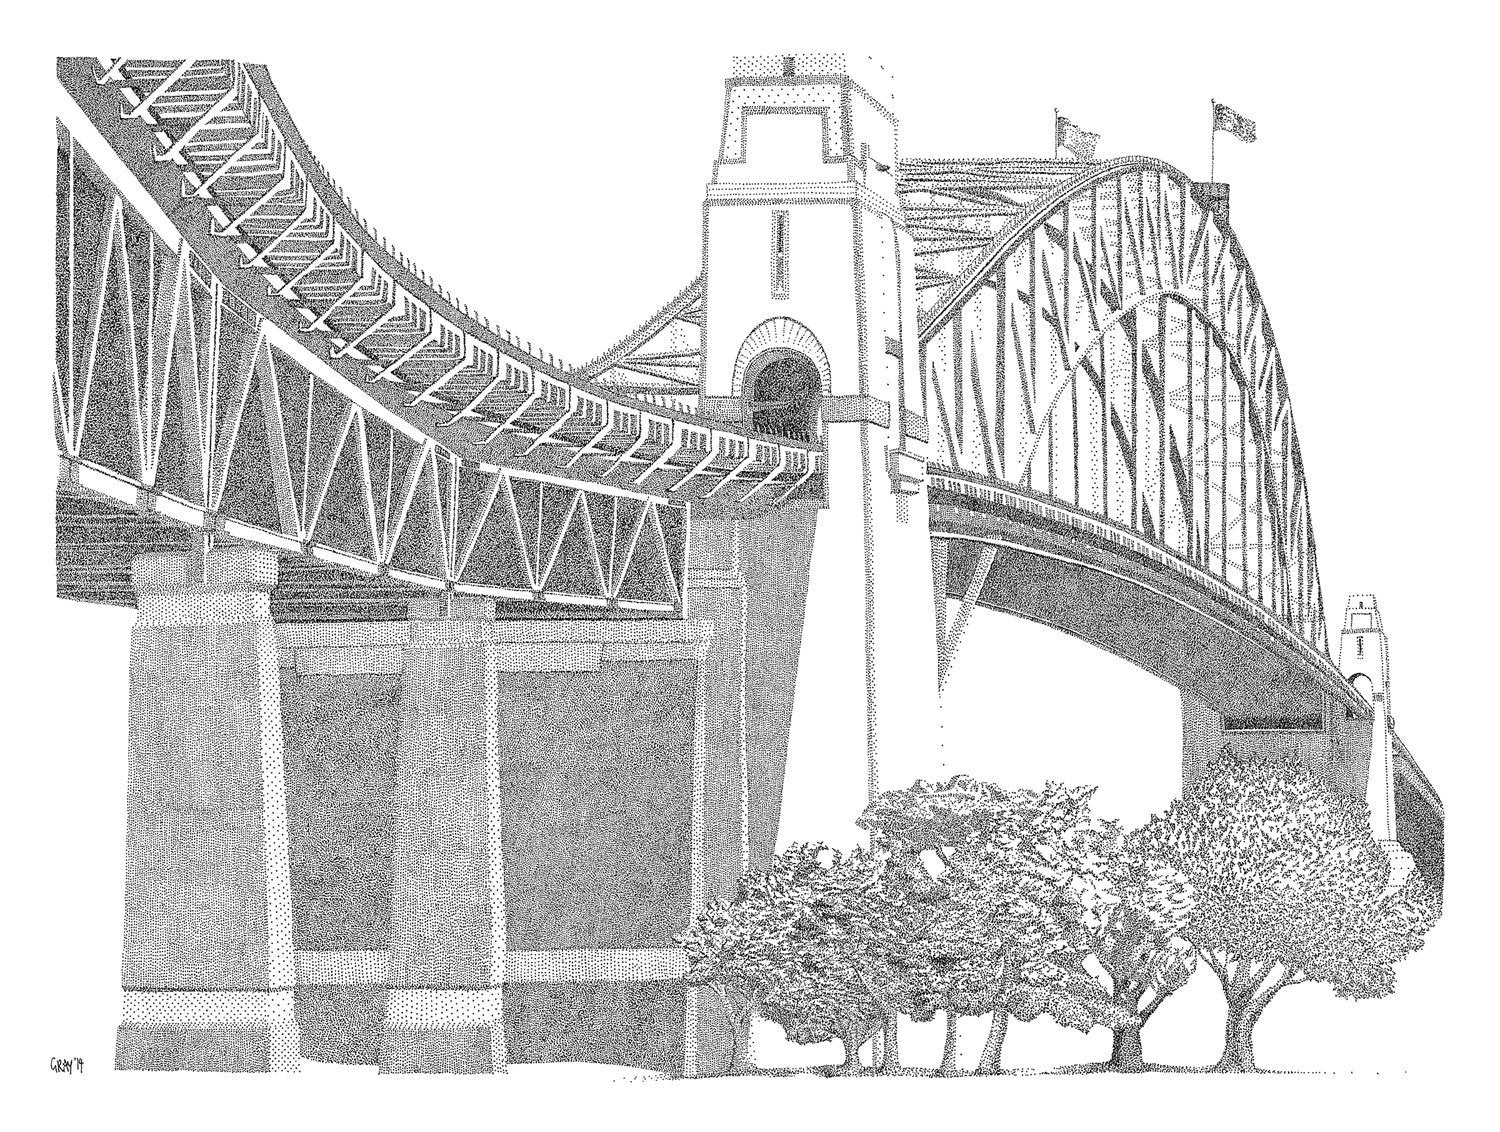 Sydney Harbour Bridge Australia One Line Vector Illustration  Ilustraciones svg vectoriales clip art vectorizado libre de derechos  Image 137850445